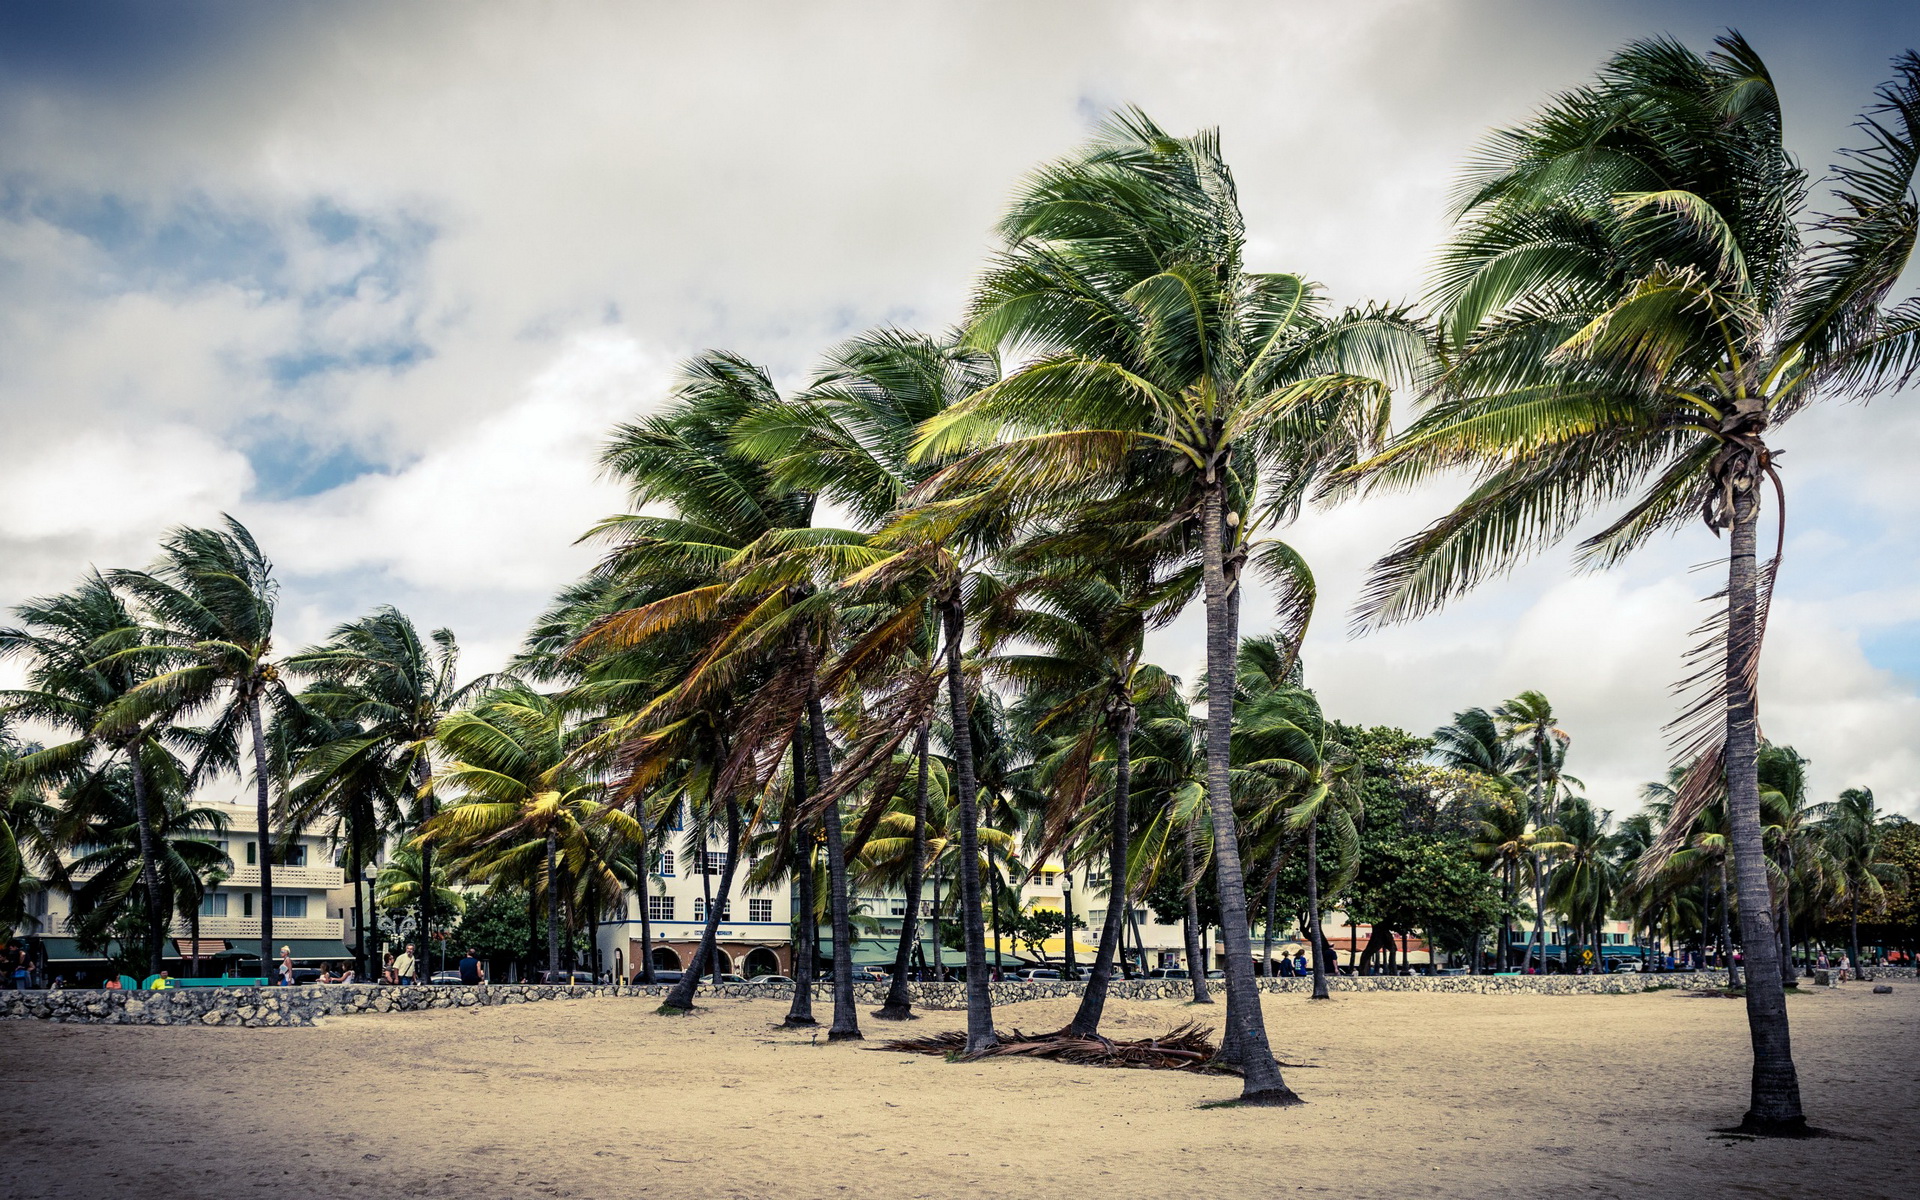 Скачать картинку Пляж, Пальмы, Дерево, Фотографии в телефон бесплатно.